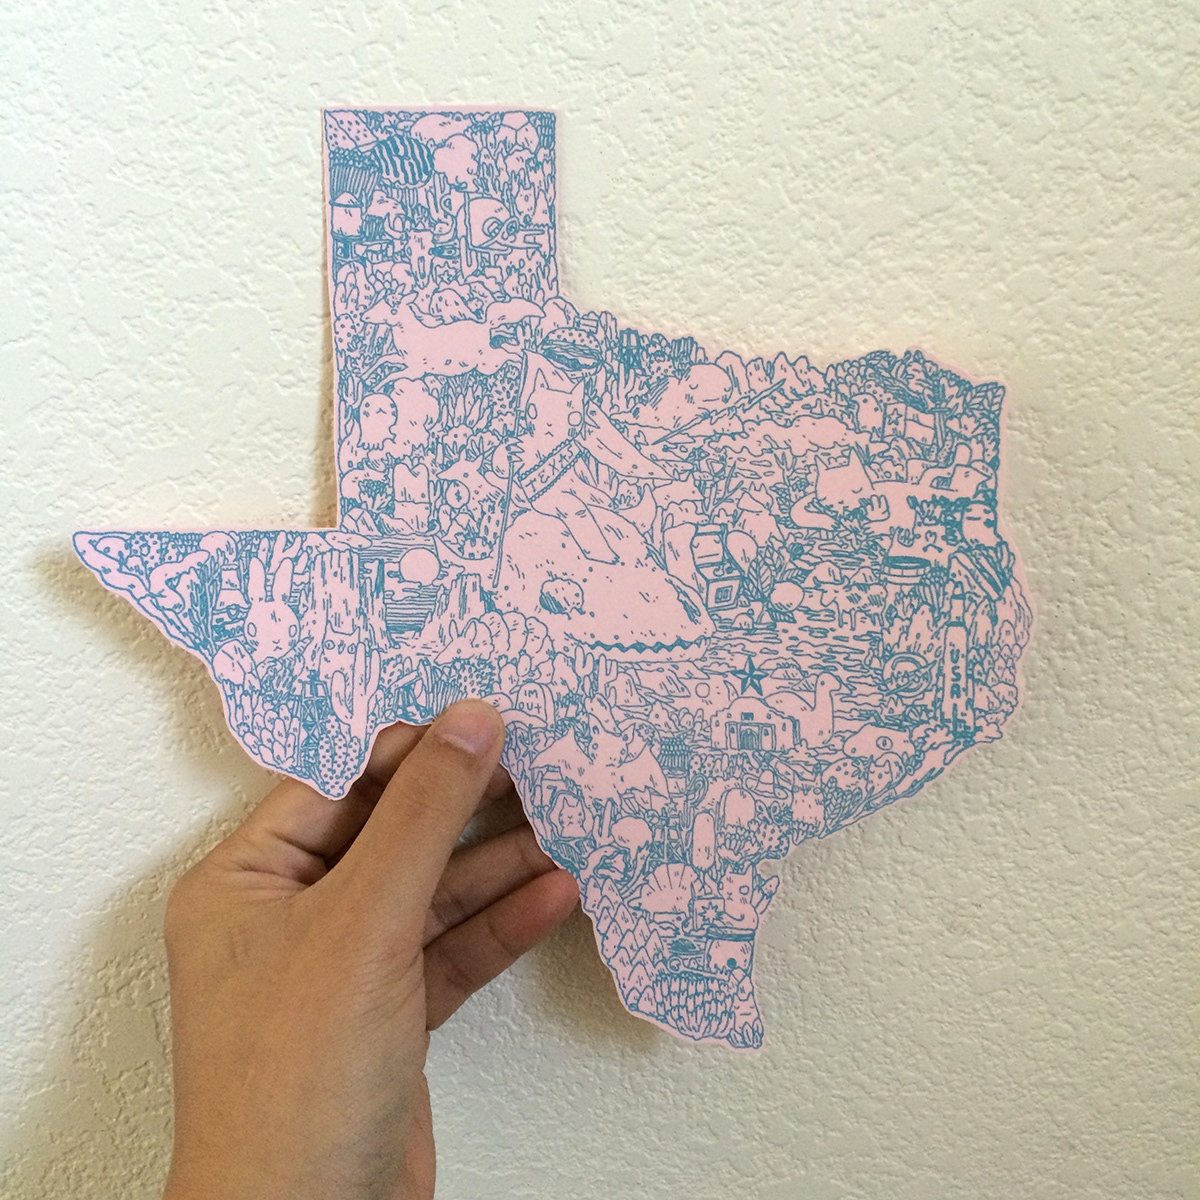 texas cartography maps cats Bats birds nasa houston alamo San Antonio history Oil Rigs